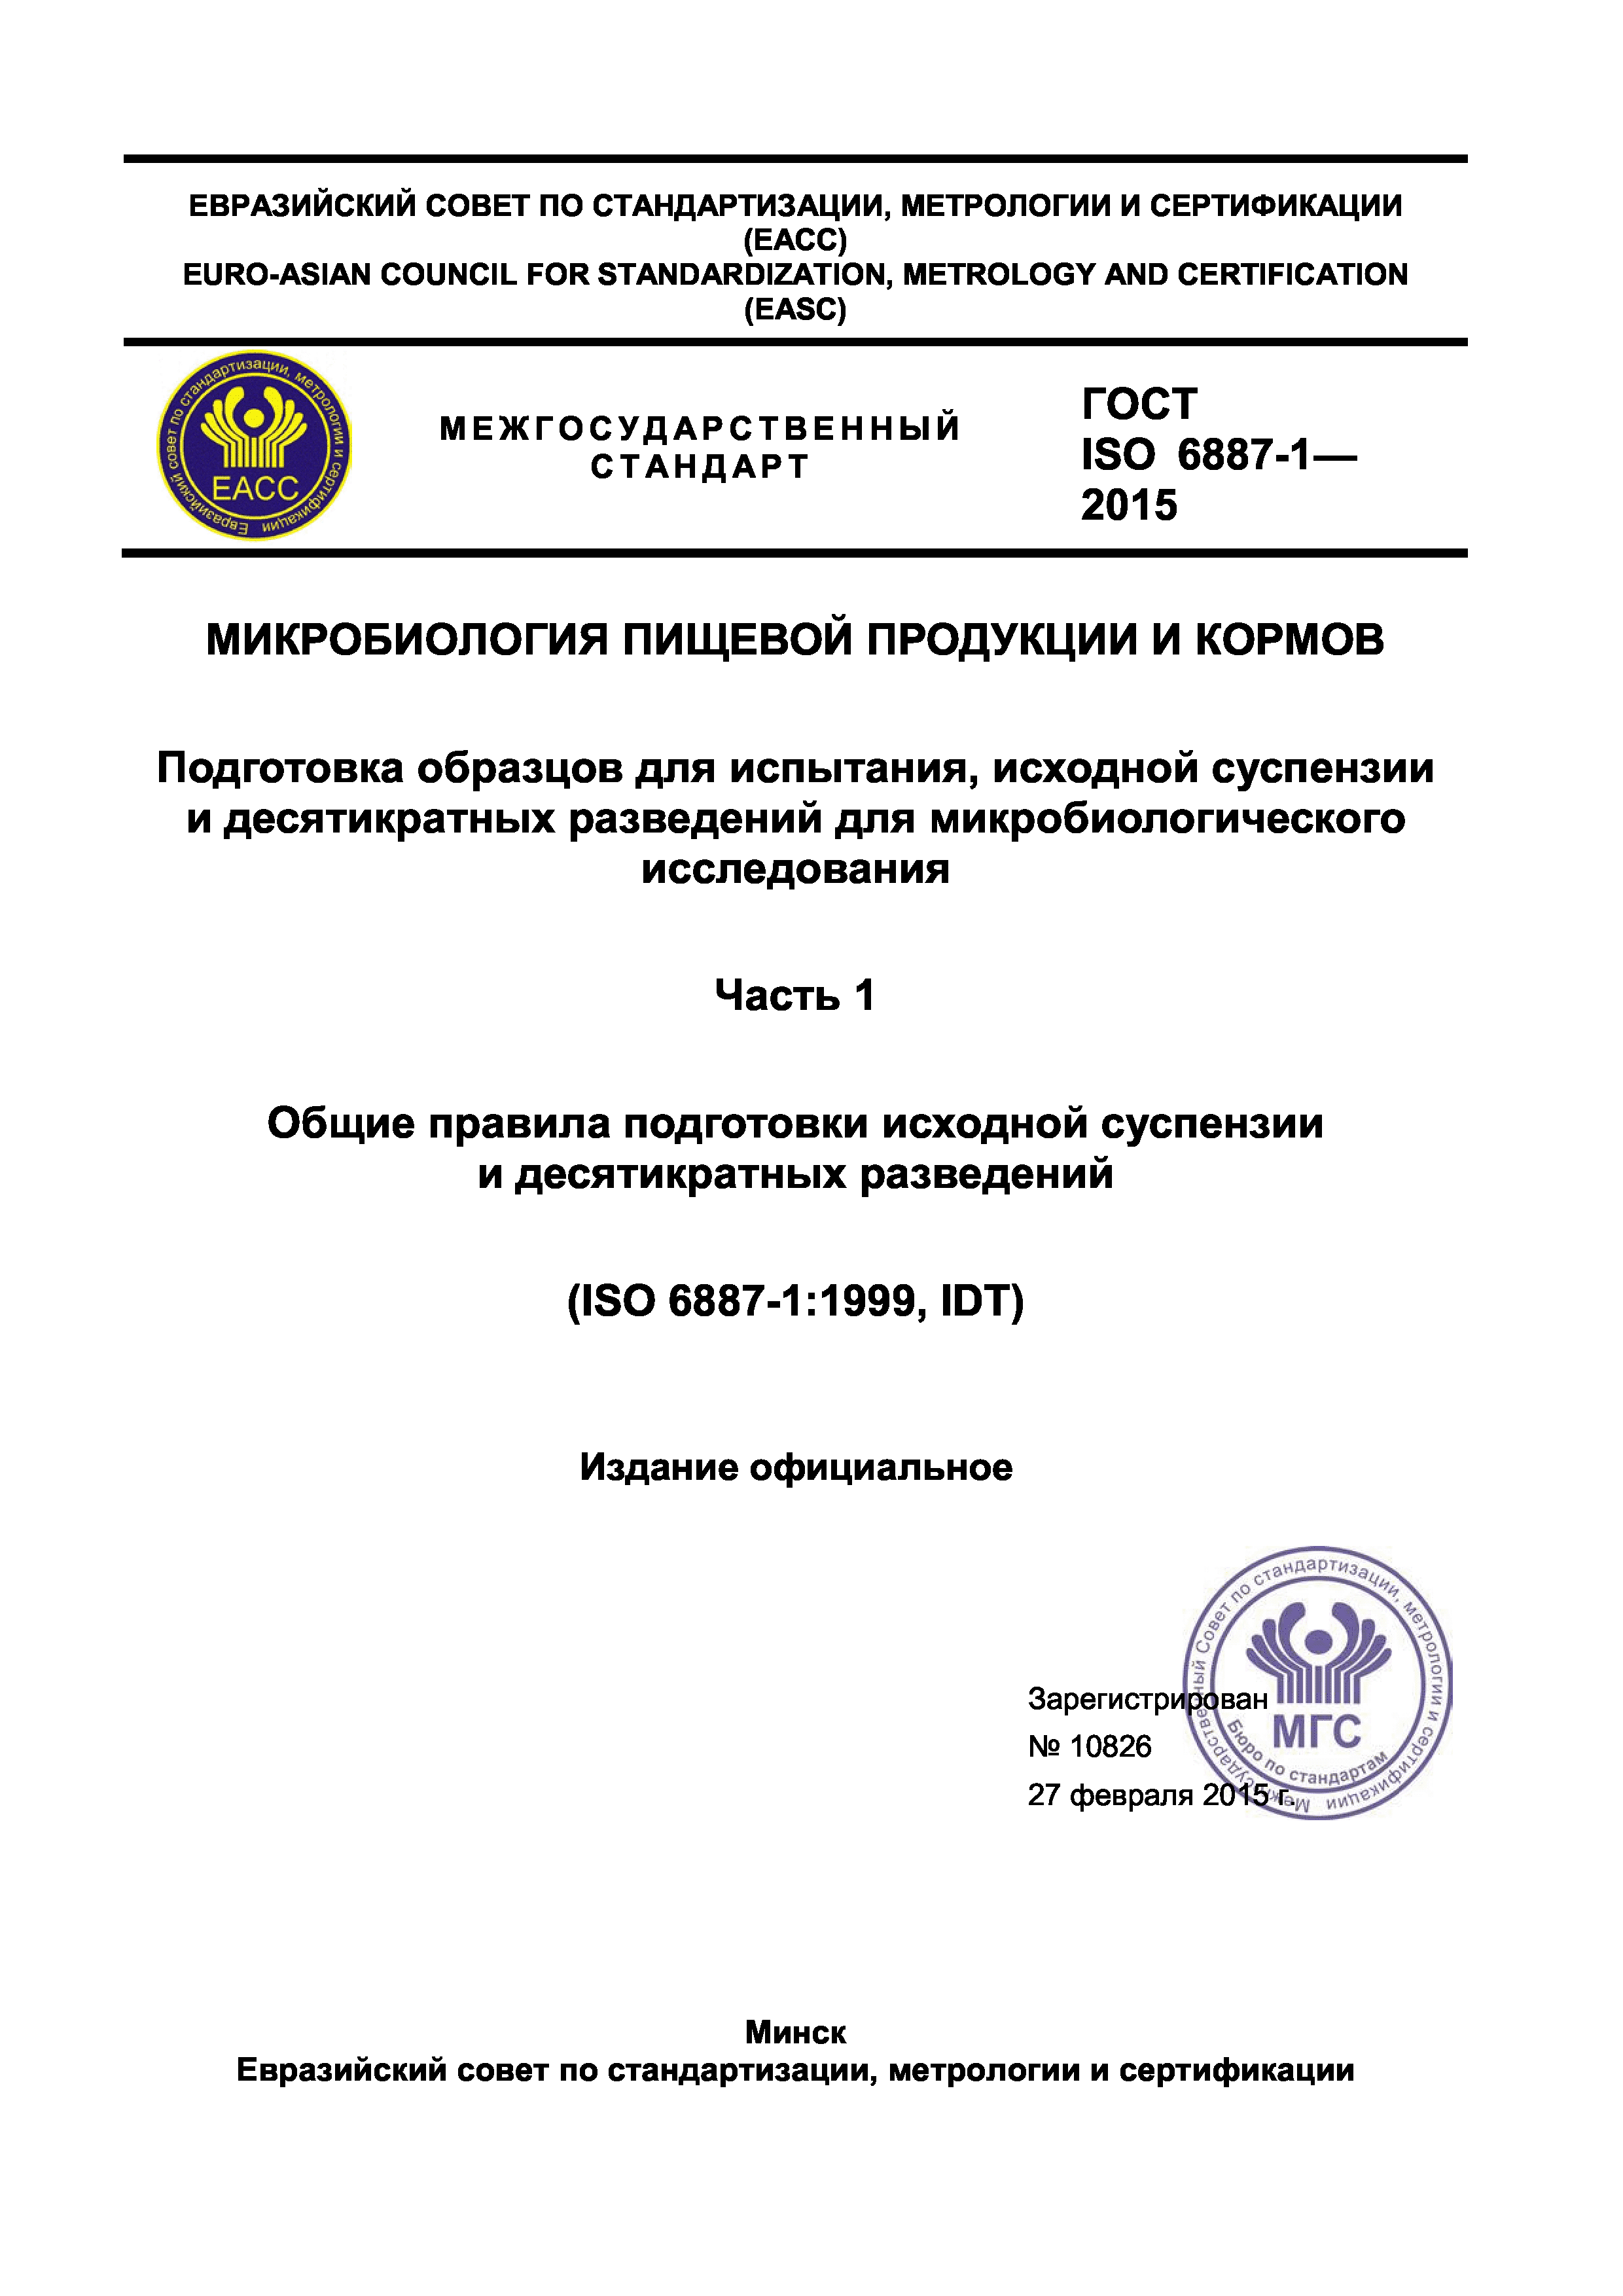 ГОСТ ISO 6887-1-2015